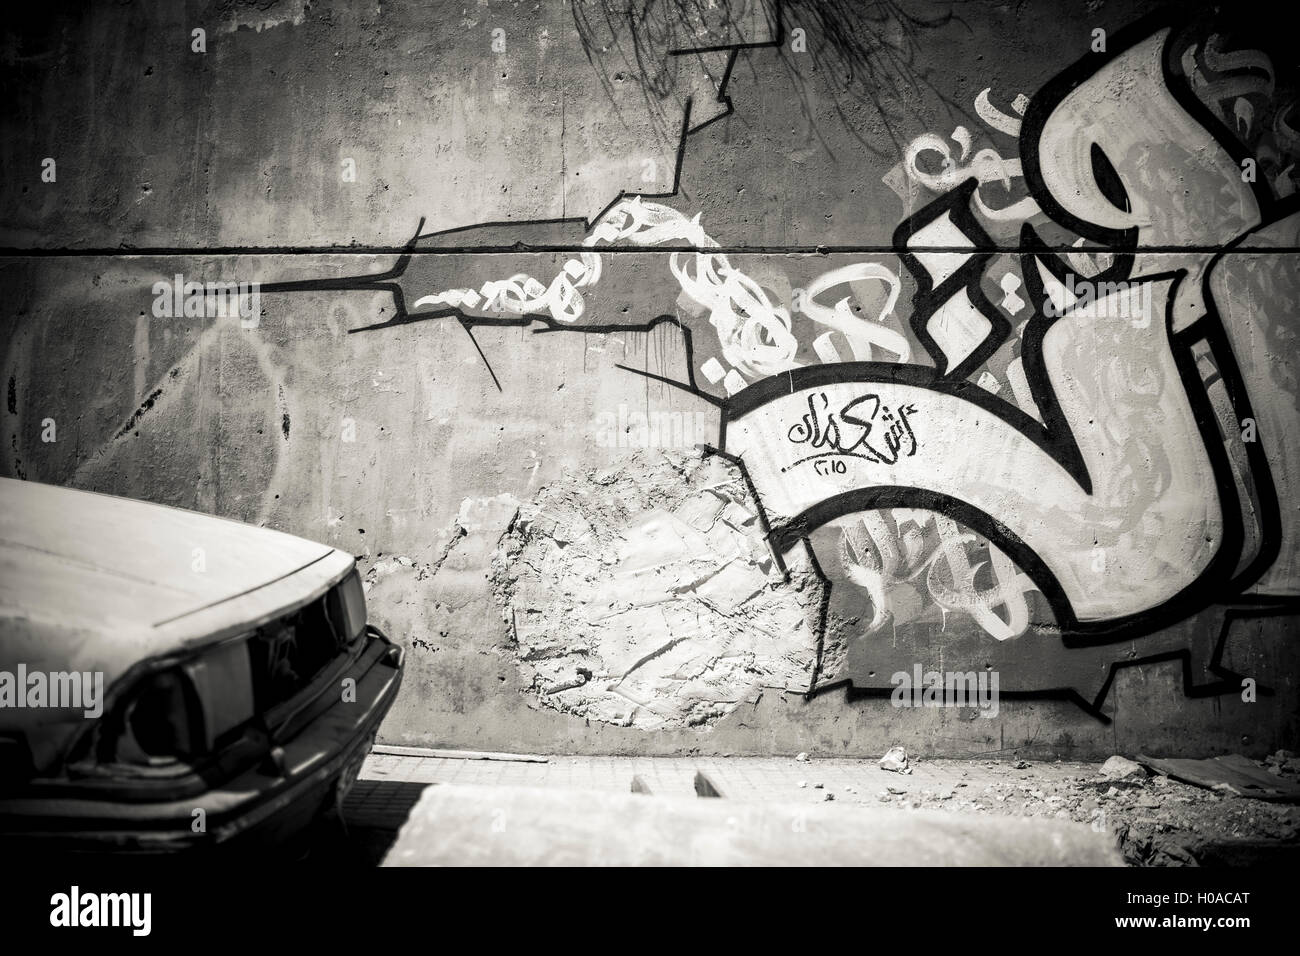 Les graffitis à Beyrouth - 10/08/2015 - Liban / Beyrouth - Mar Mikhail, Beyrouth, août 2015. Détail d'un mur par des libanais graffiti montréalais pe3alim. L'un des rares qui ne le graffiti avec lettres arabes. (Mur recouvert par la municipalité en 2016). - Bilal Tarabey / Le Pictorium Banque D'Images